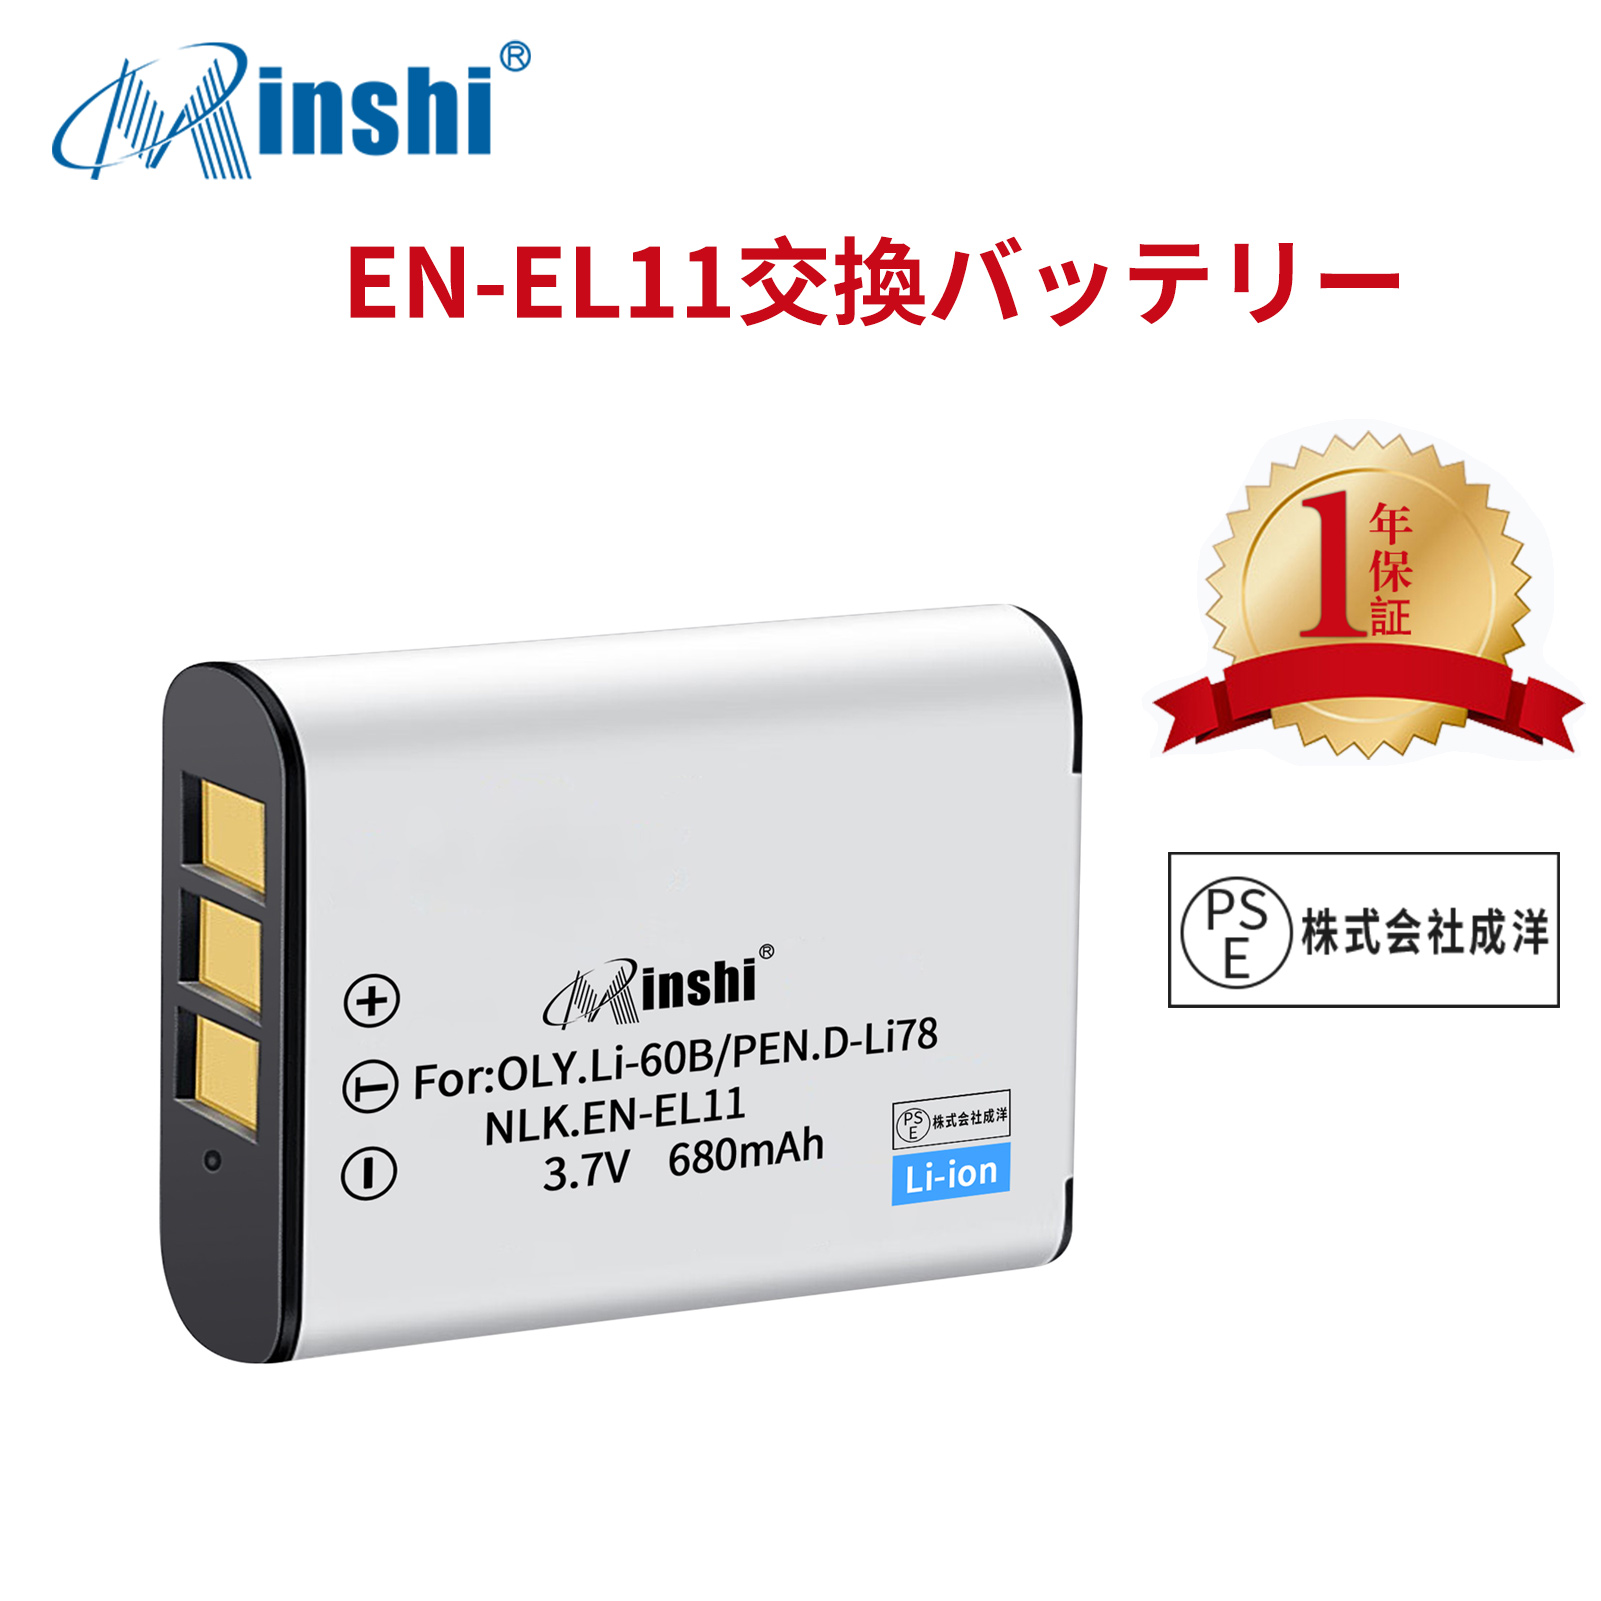 【1年保証】minshi NIKON Optio L50 EN-EL11 【680mAh 3.7V】PSE認定済 高品質交換用バッテリー オリジナル充電器との互換性がない